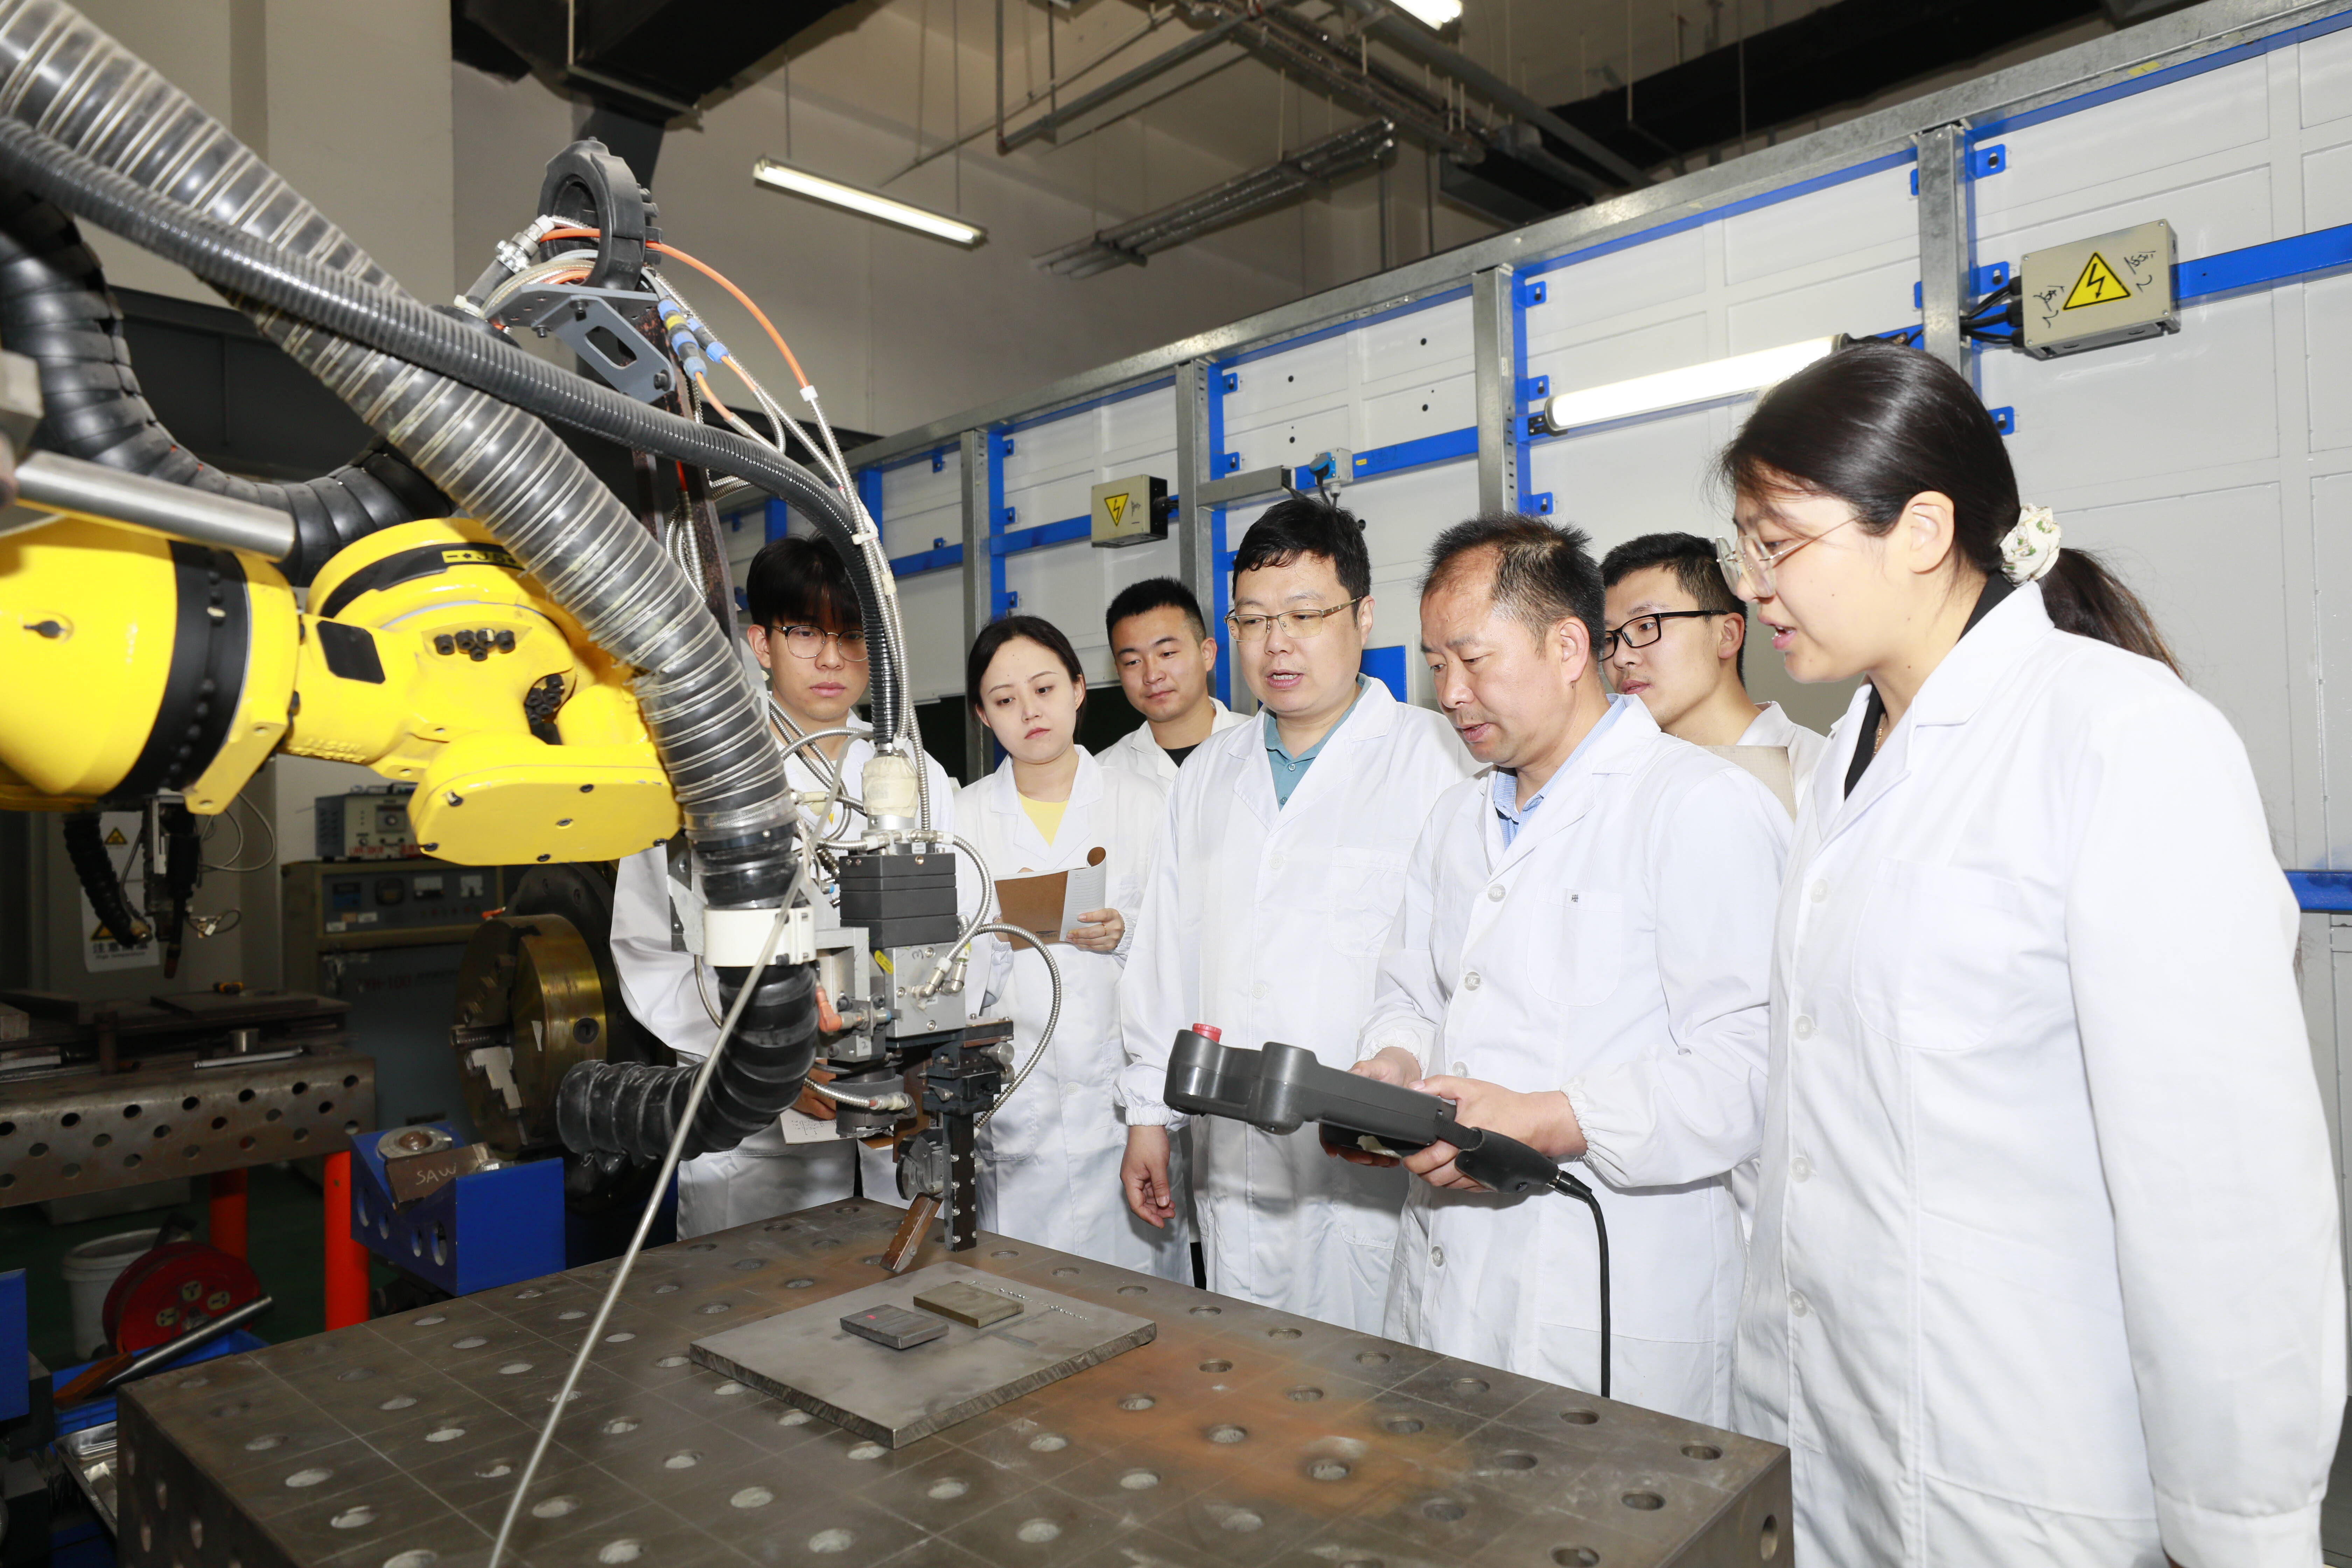 中国石油大学(华东)团队表面处理技术及应用实现新突破